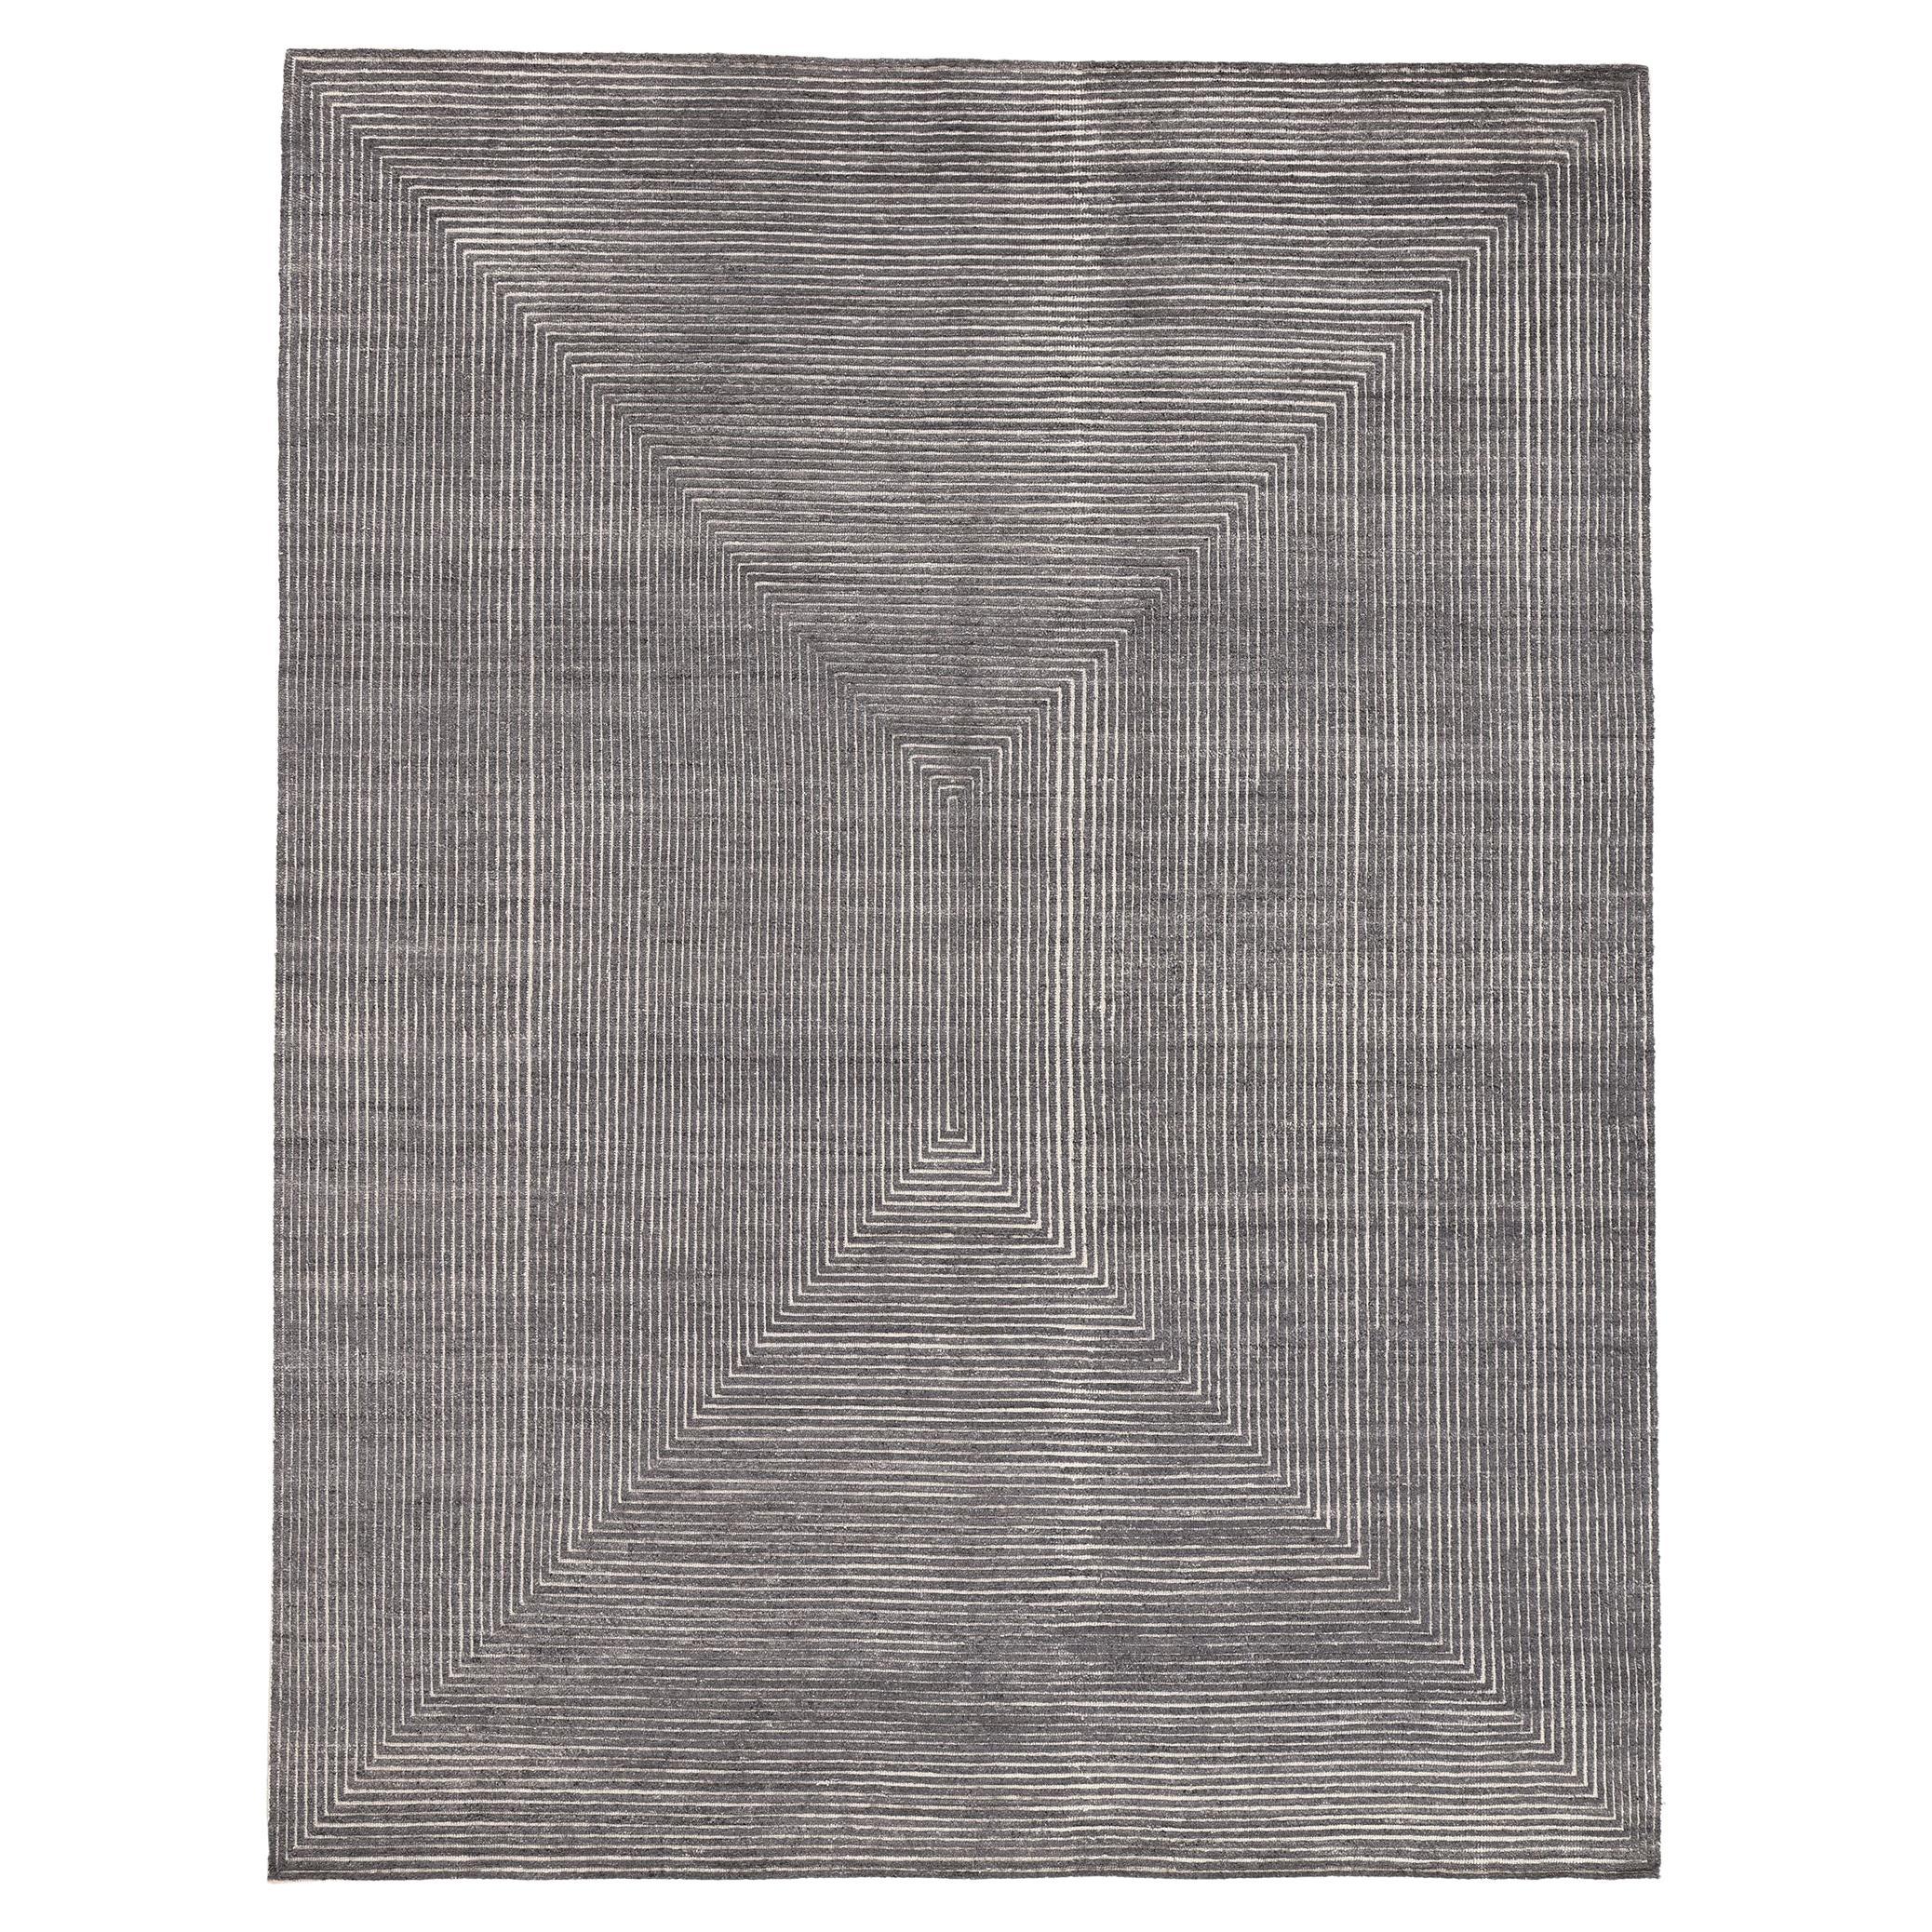 Tapis d'art optique gris moderne, la simplicité sublime rencontre la texture tantalisée